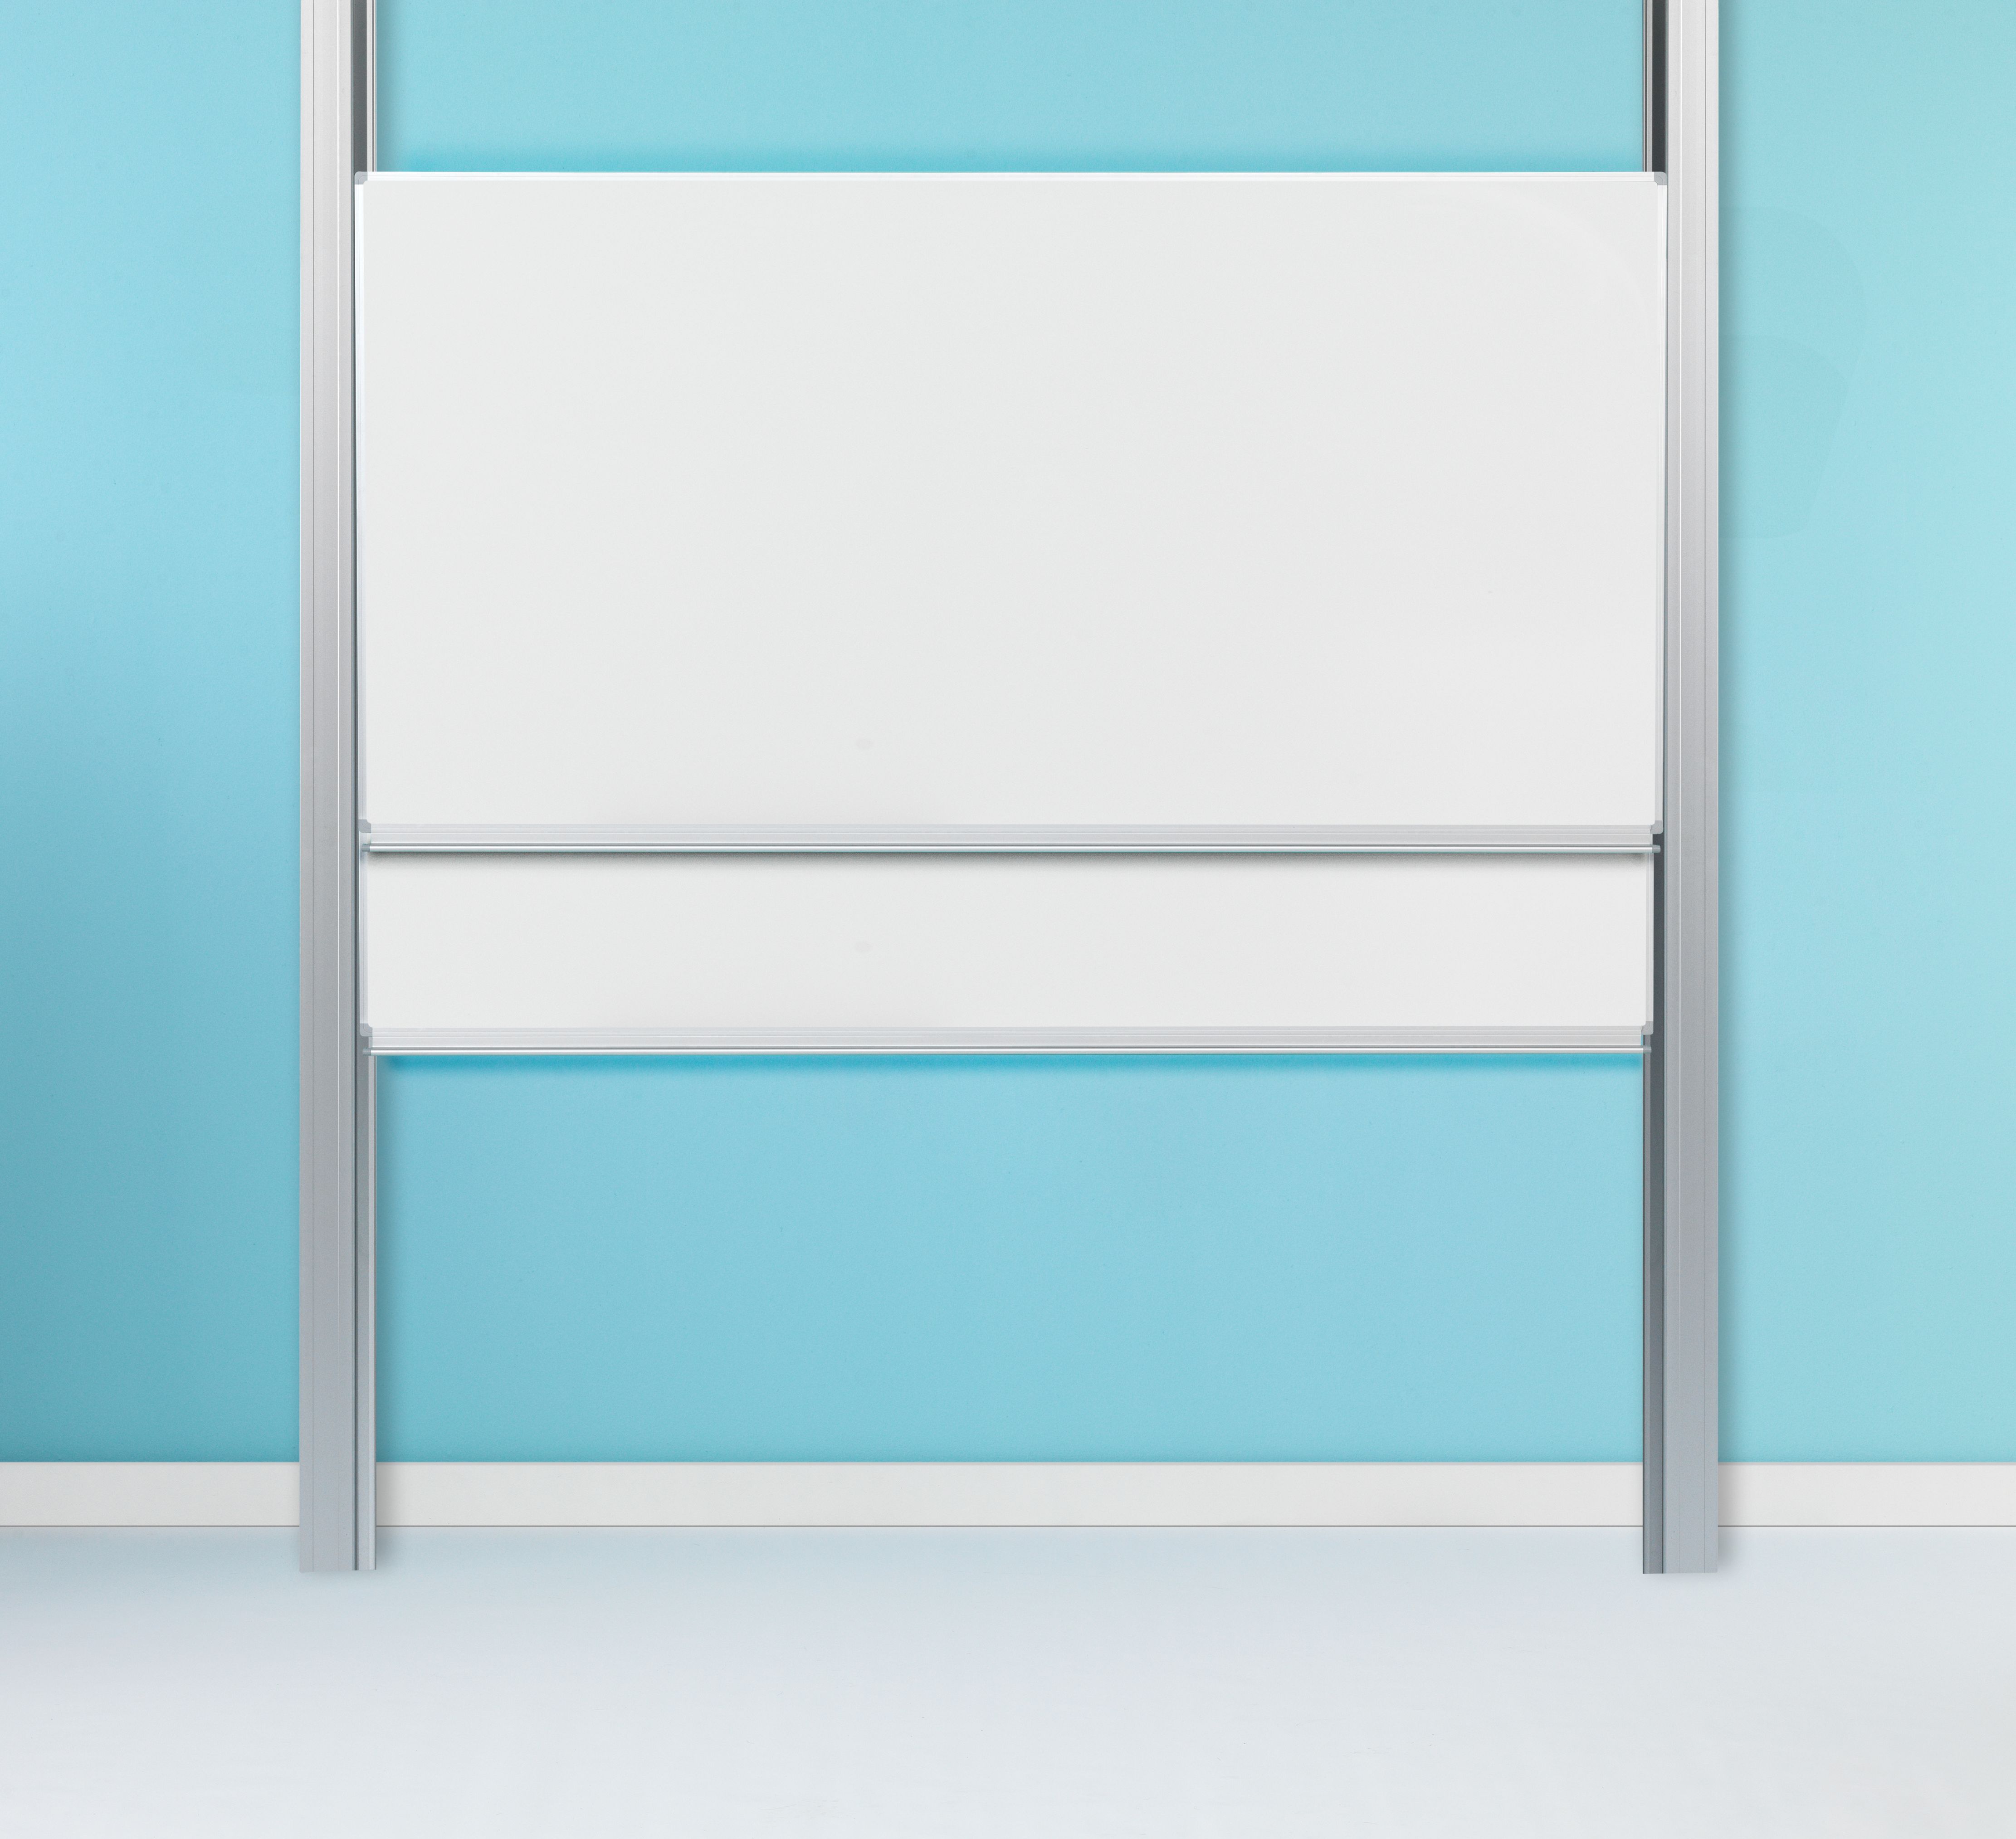 Dubbelvlaksbord schoolbord op dubbele kolommen, wit emaille - 100x200 cm